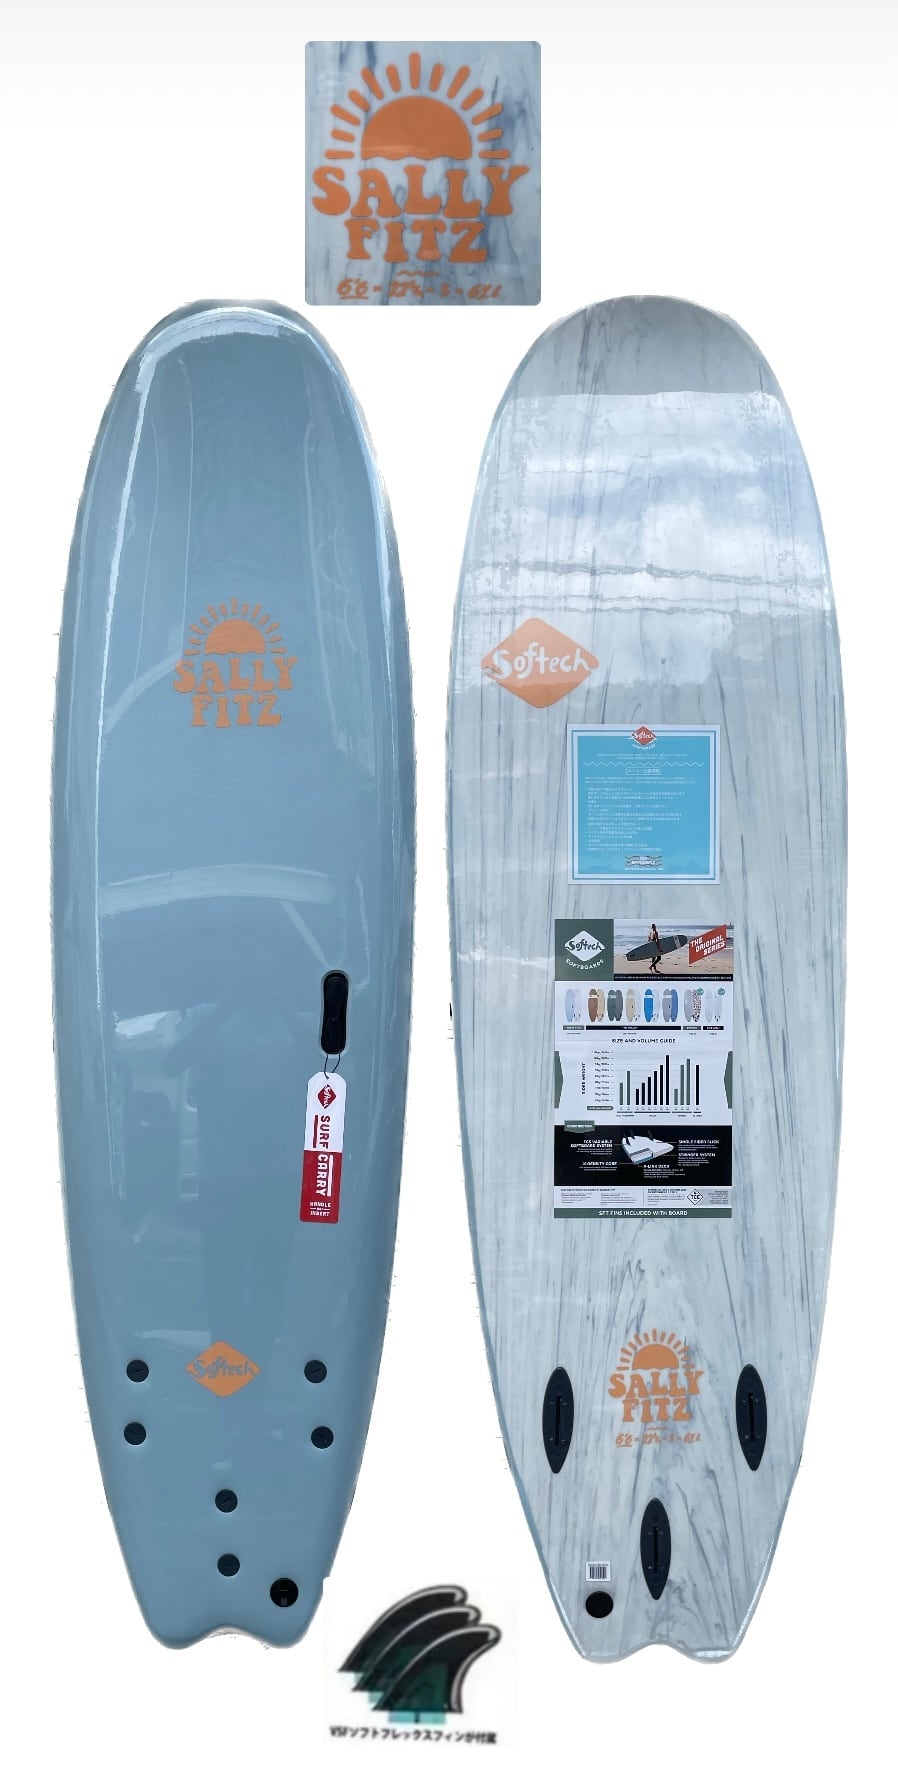 ソフテック SALLY シャリー 6'6 ソフトボード 61L | KAISERS SURF